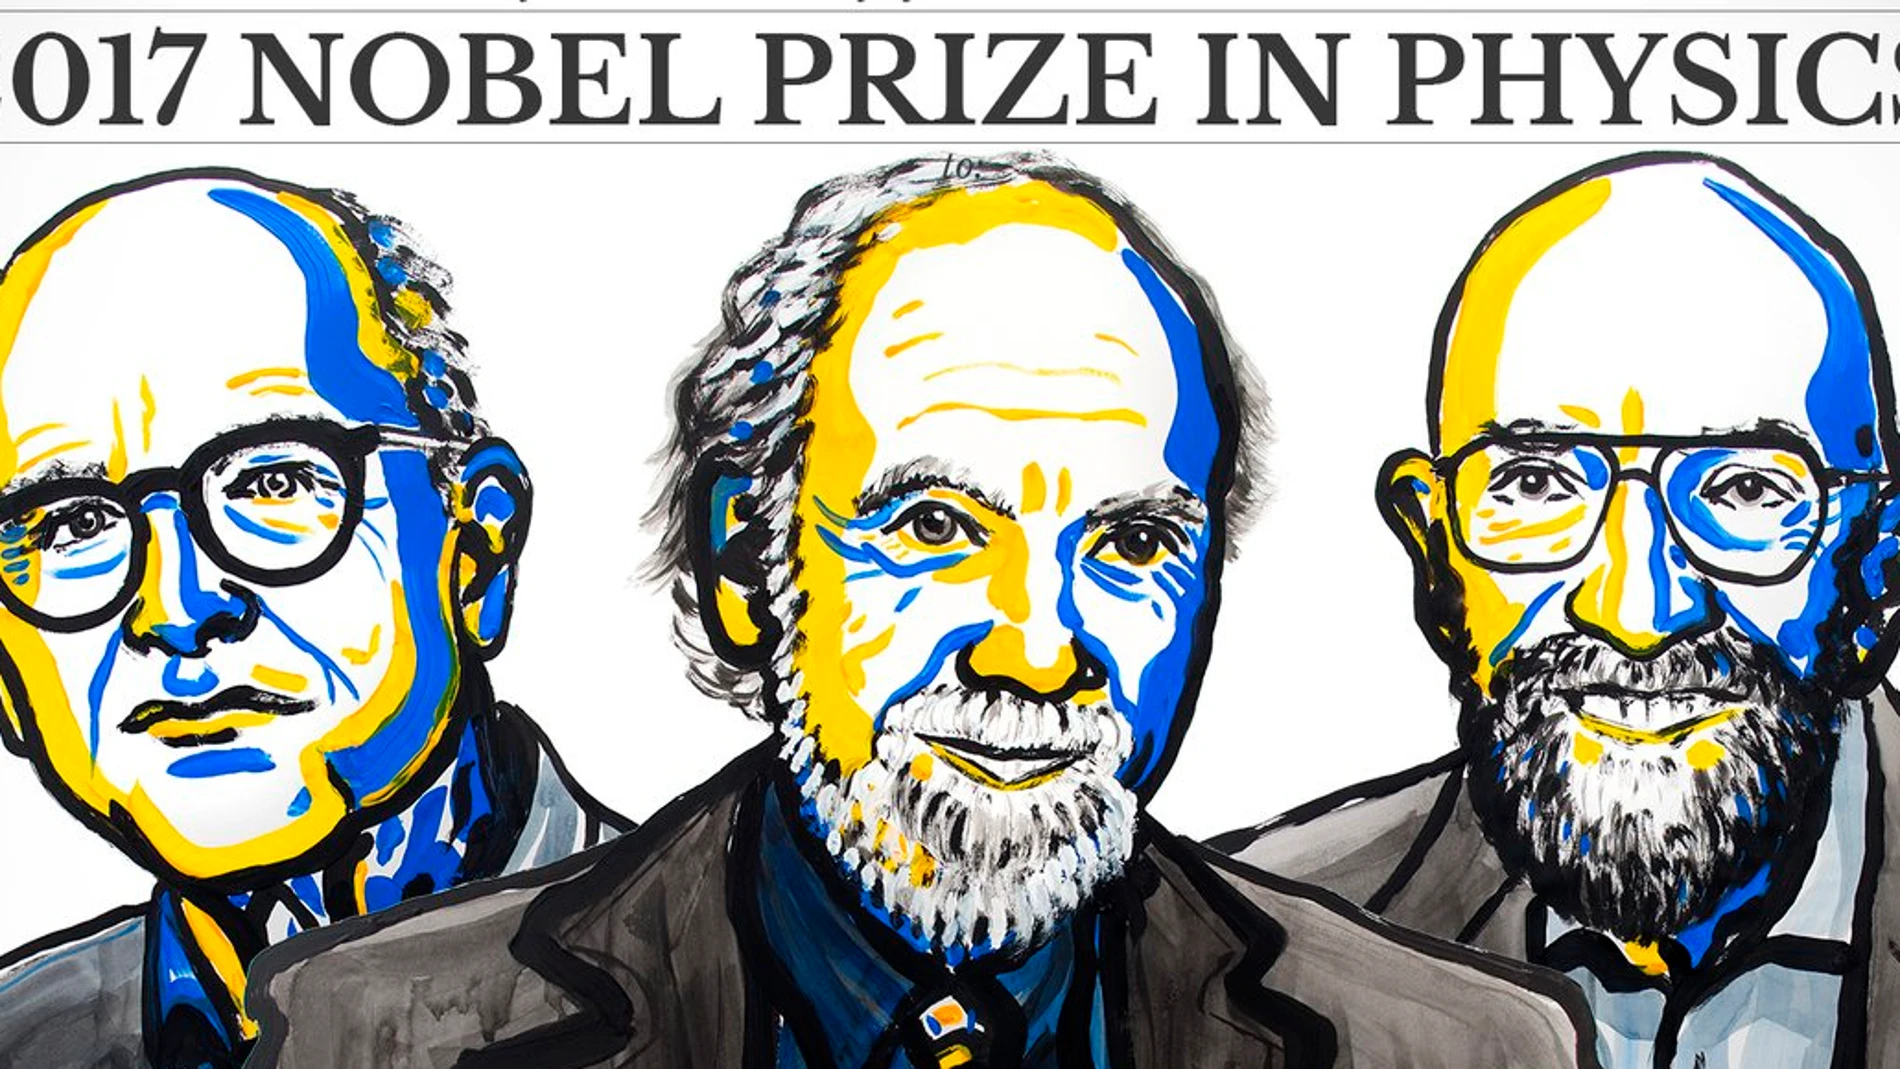 Premio Nobel de Física 2017